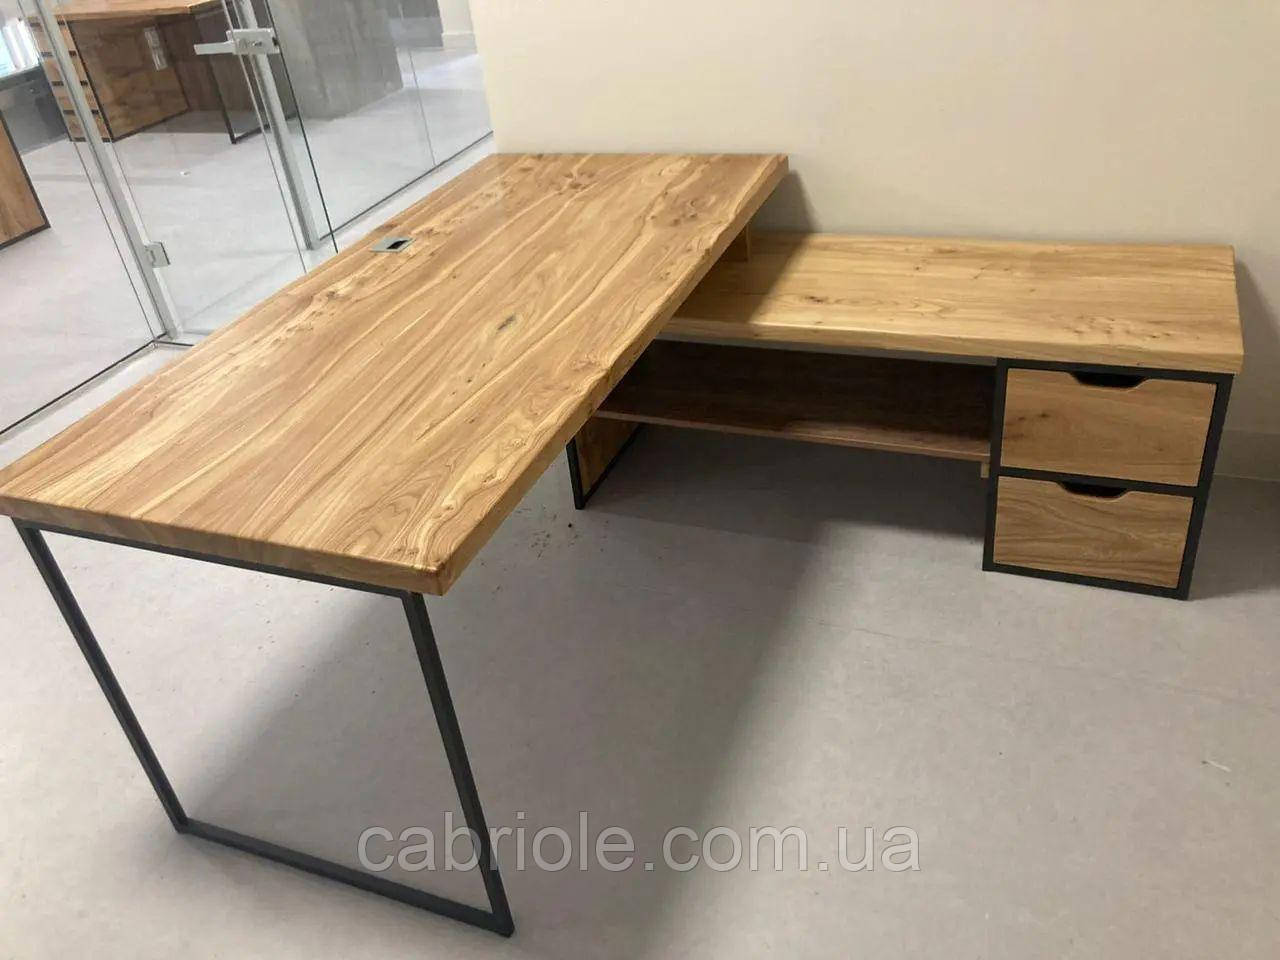 Дерев'яний конференц-стіл зі слебів ясеня